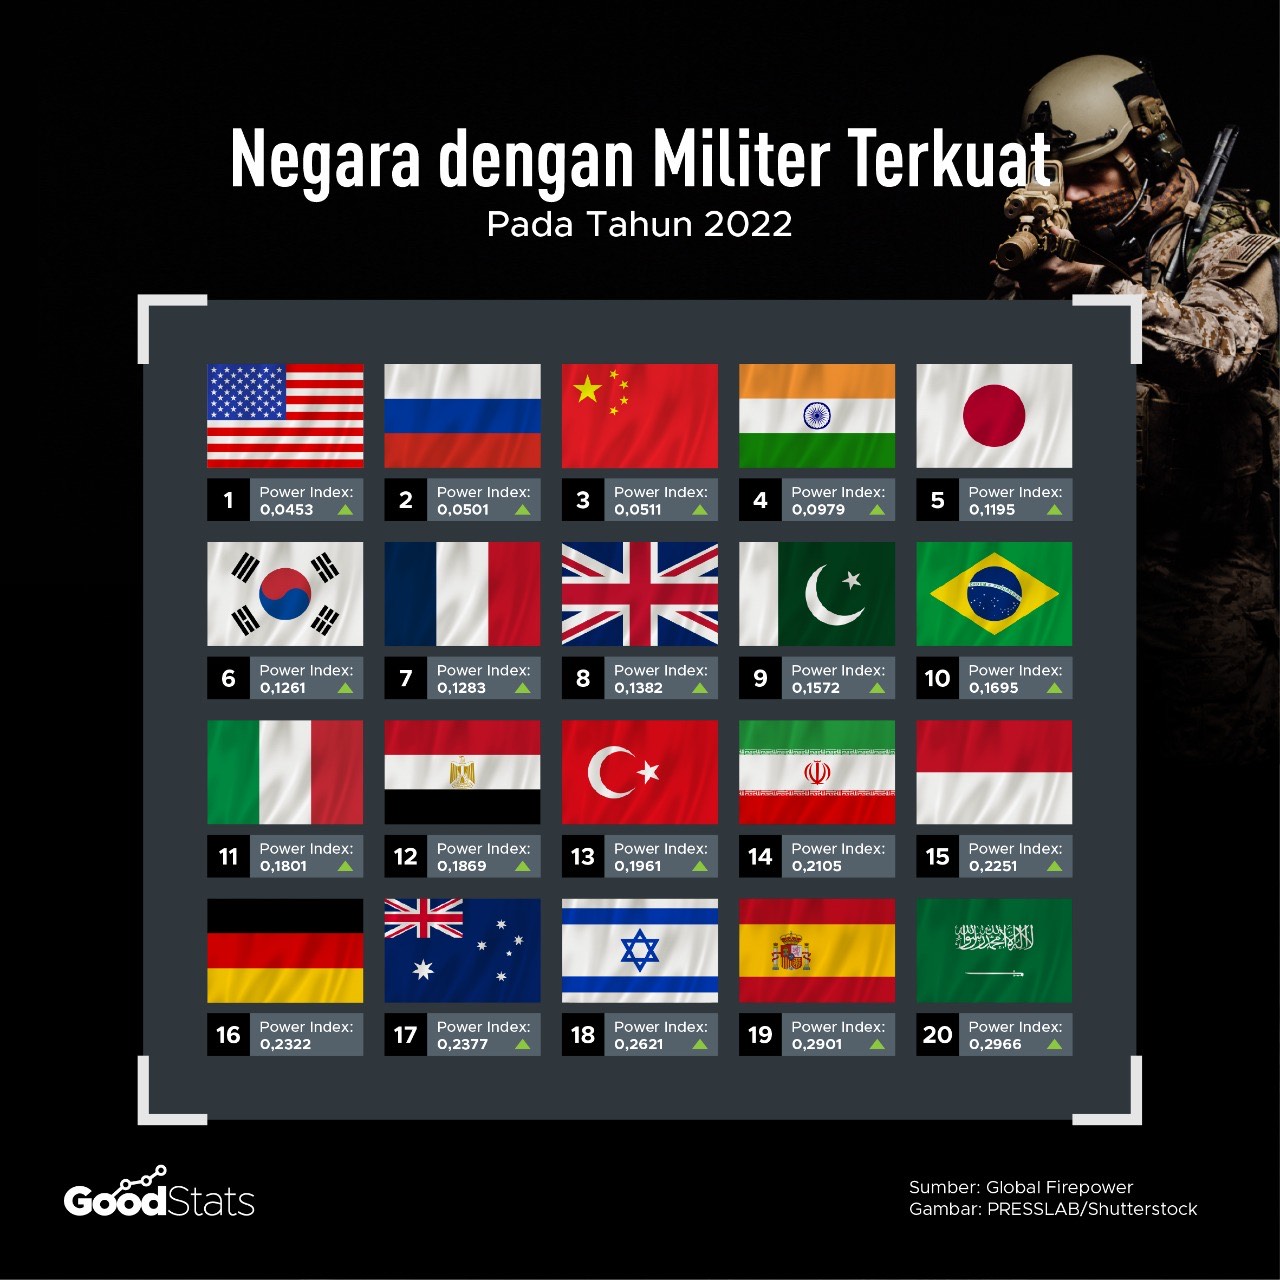 Peringkat kekuatan militer 2022 | Aghapier/GoodStats